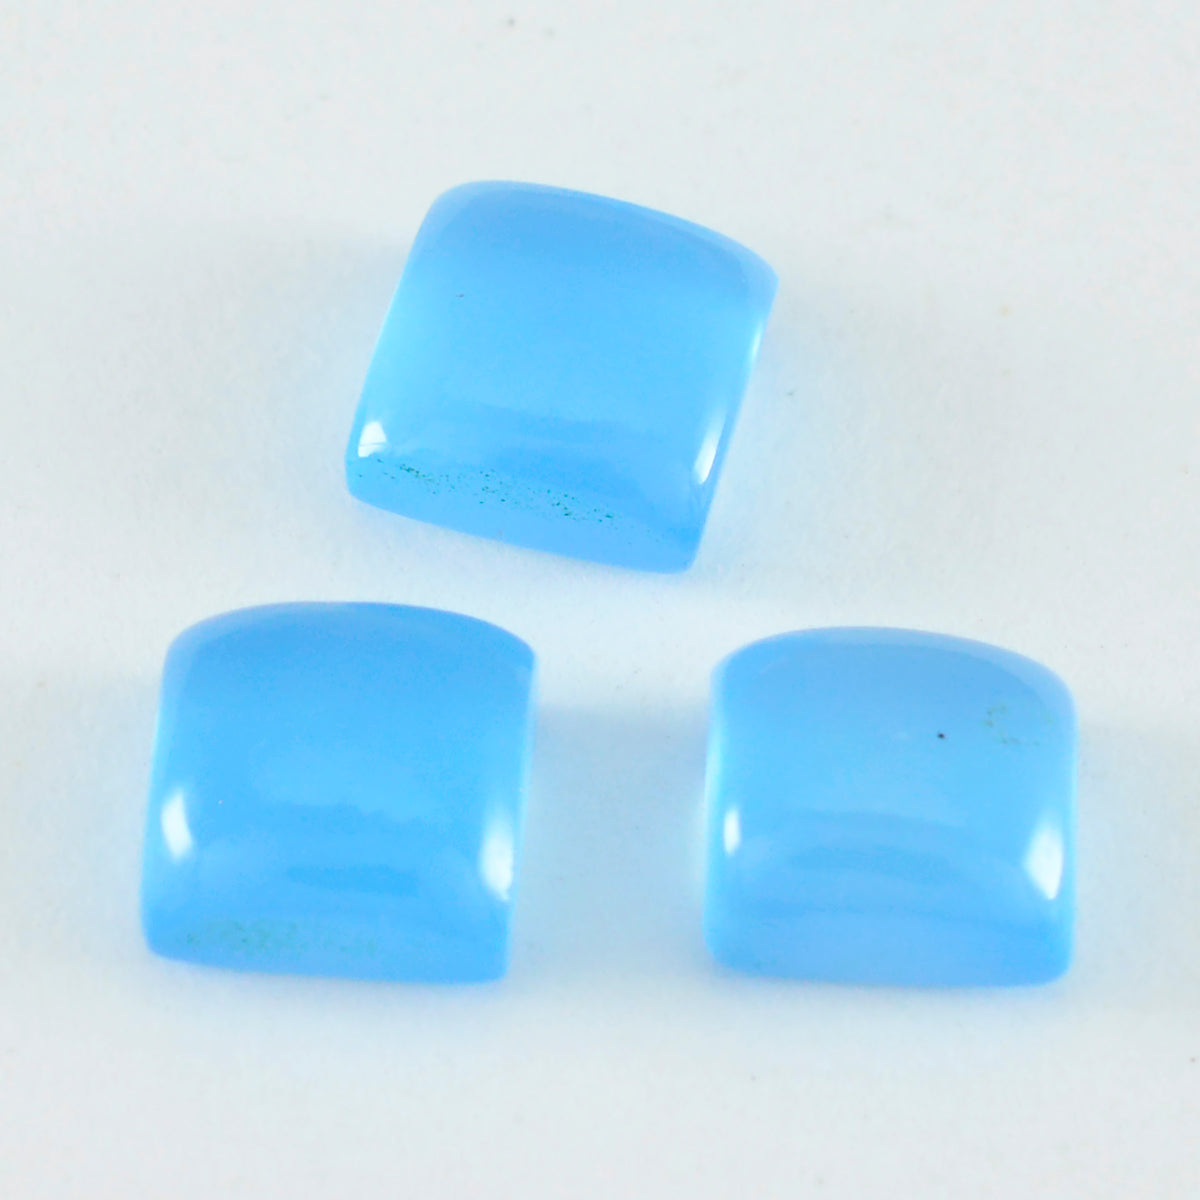 Riyogems 1 Stück blauer Chalcedon-Cabochon, 9 x 9 mm, quadratische Form, Edelstein von erstaunlicher Qualität